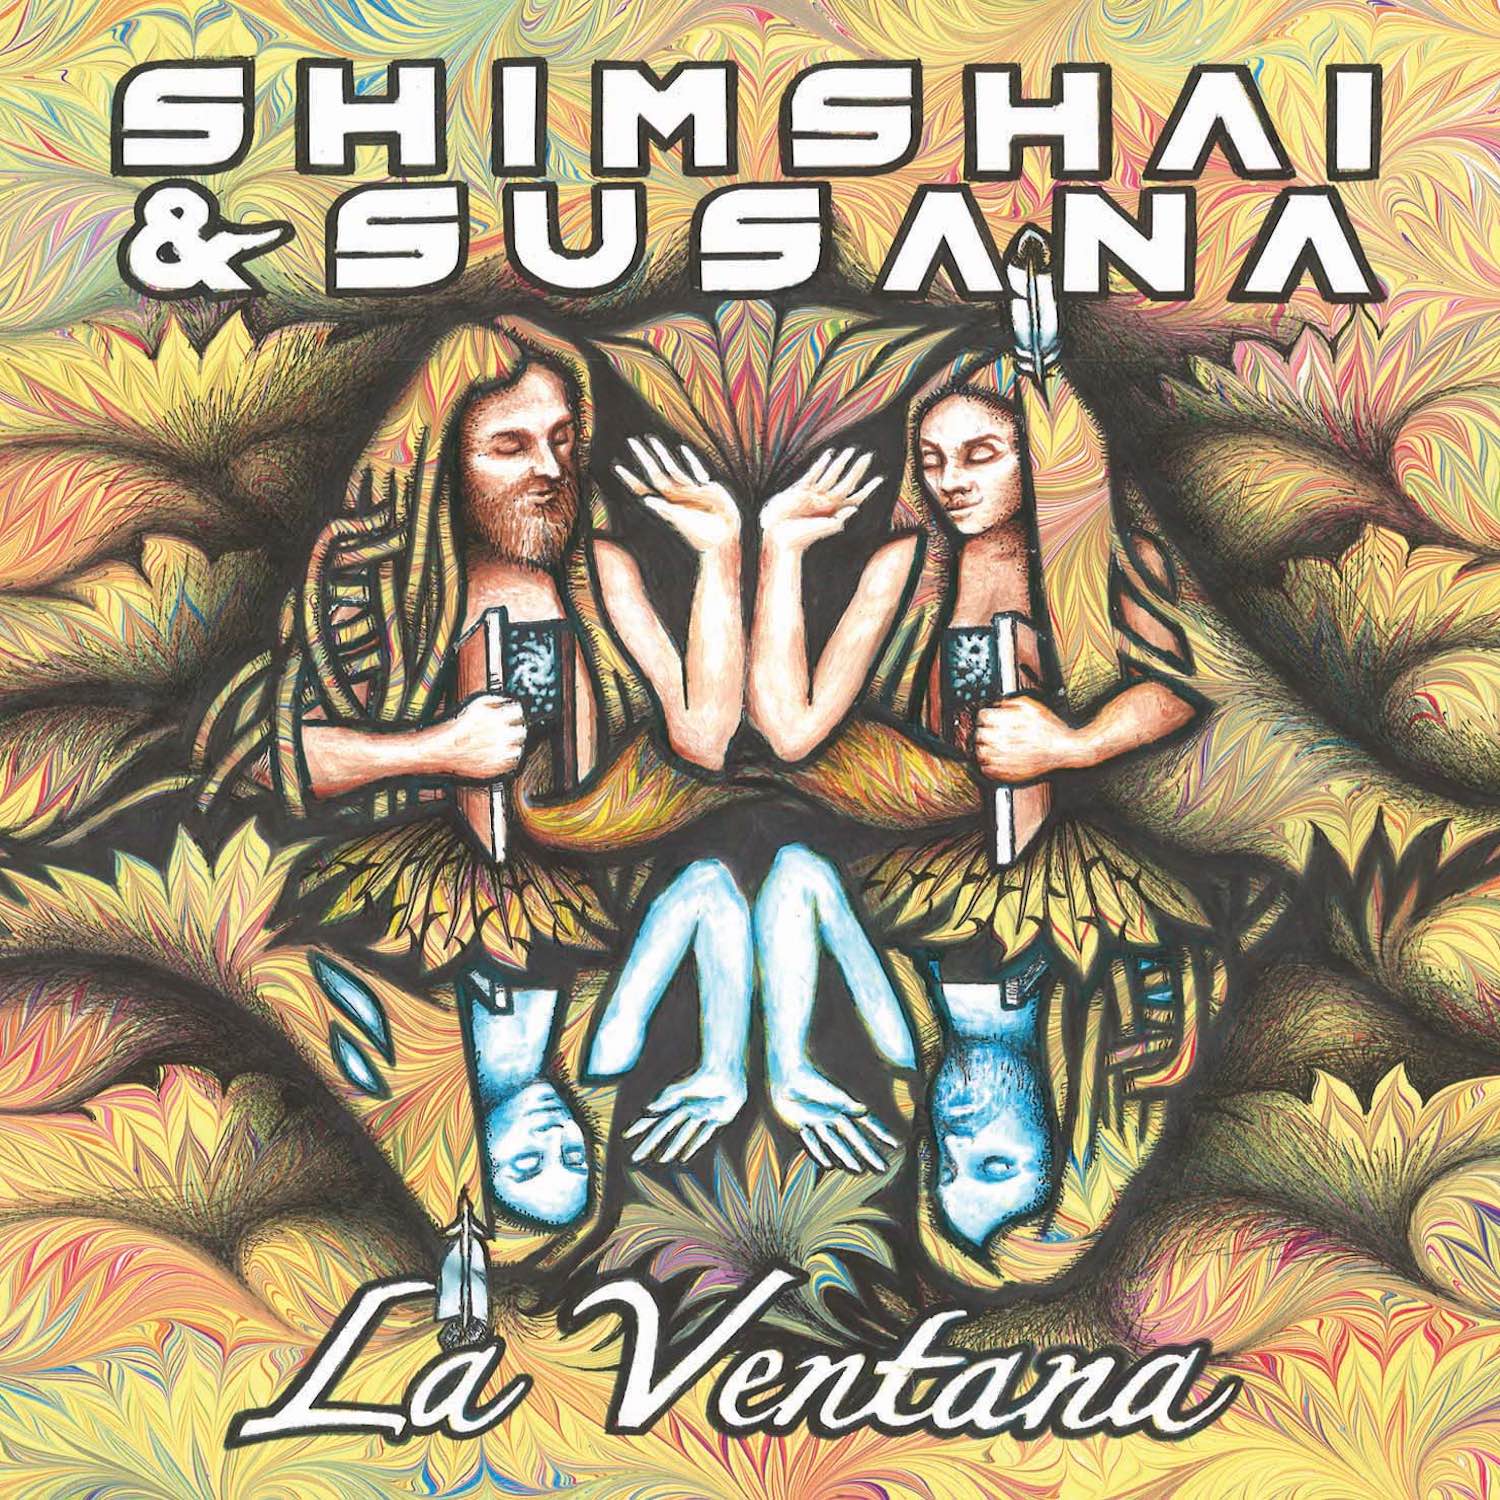 Con mi Tabaco by Alonso del Rio from the album La Ventana by Shimshai & Susana